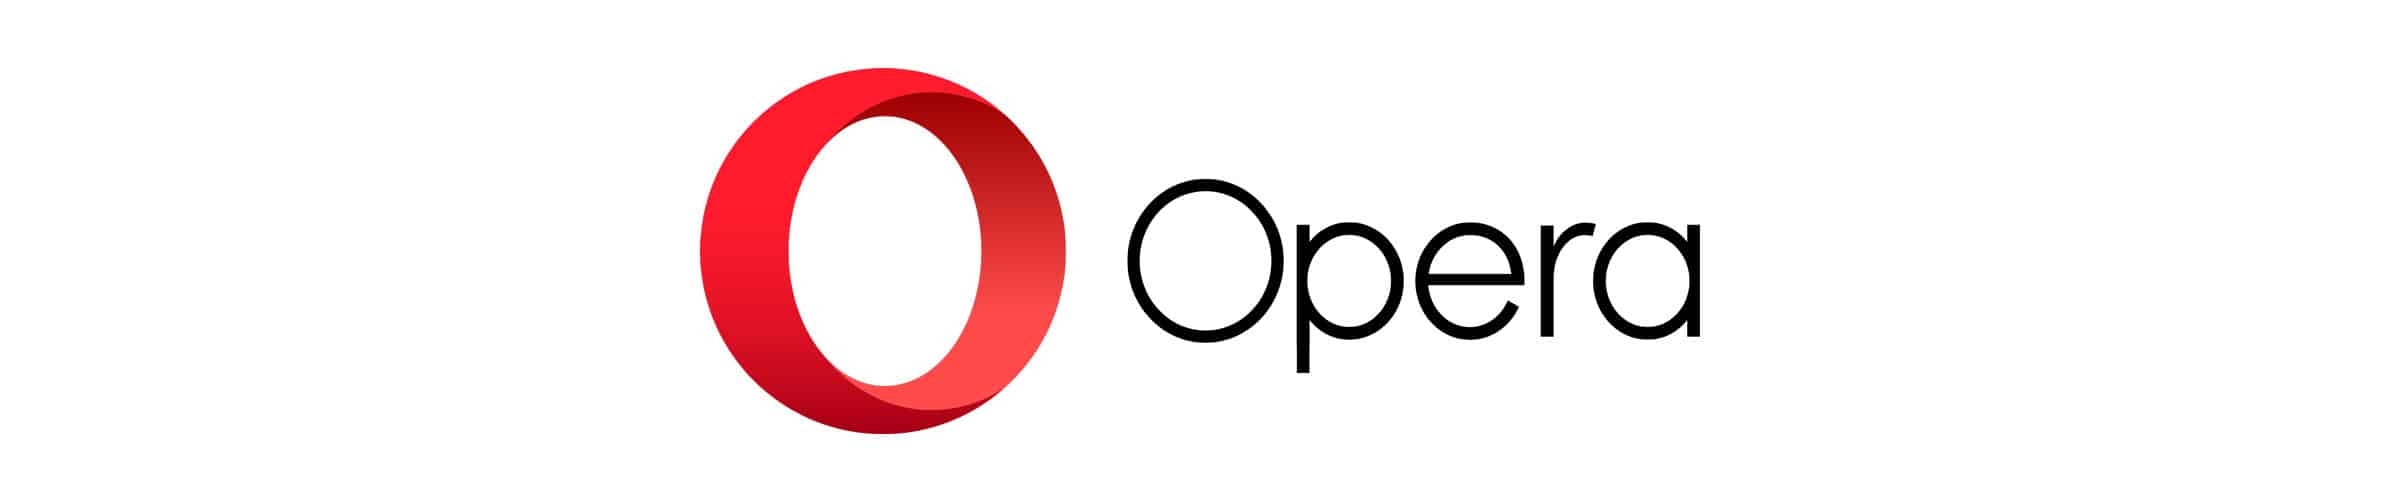 Gratis-VPN von Opera für iOS